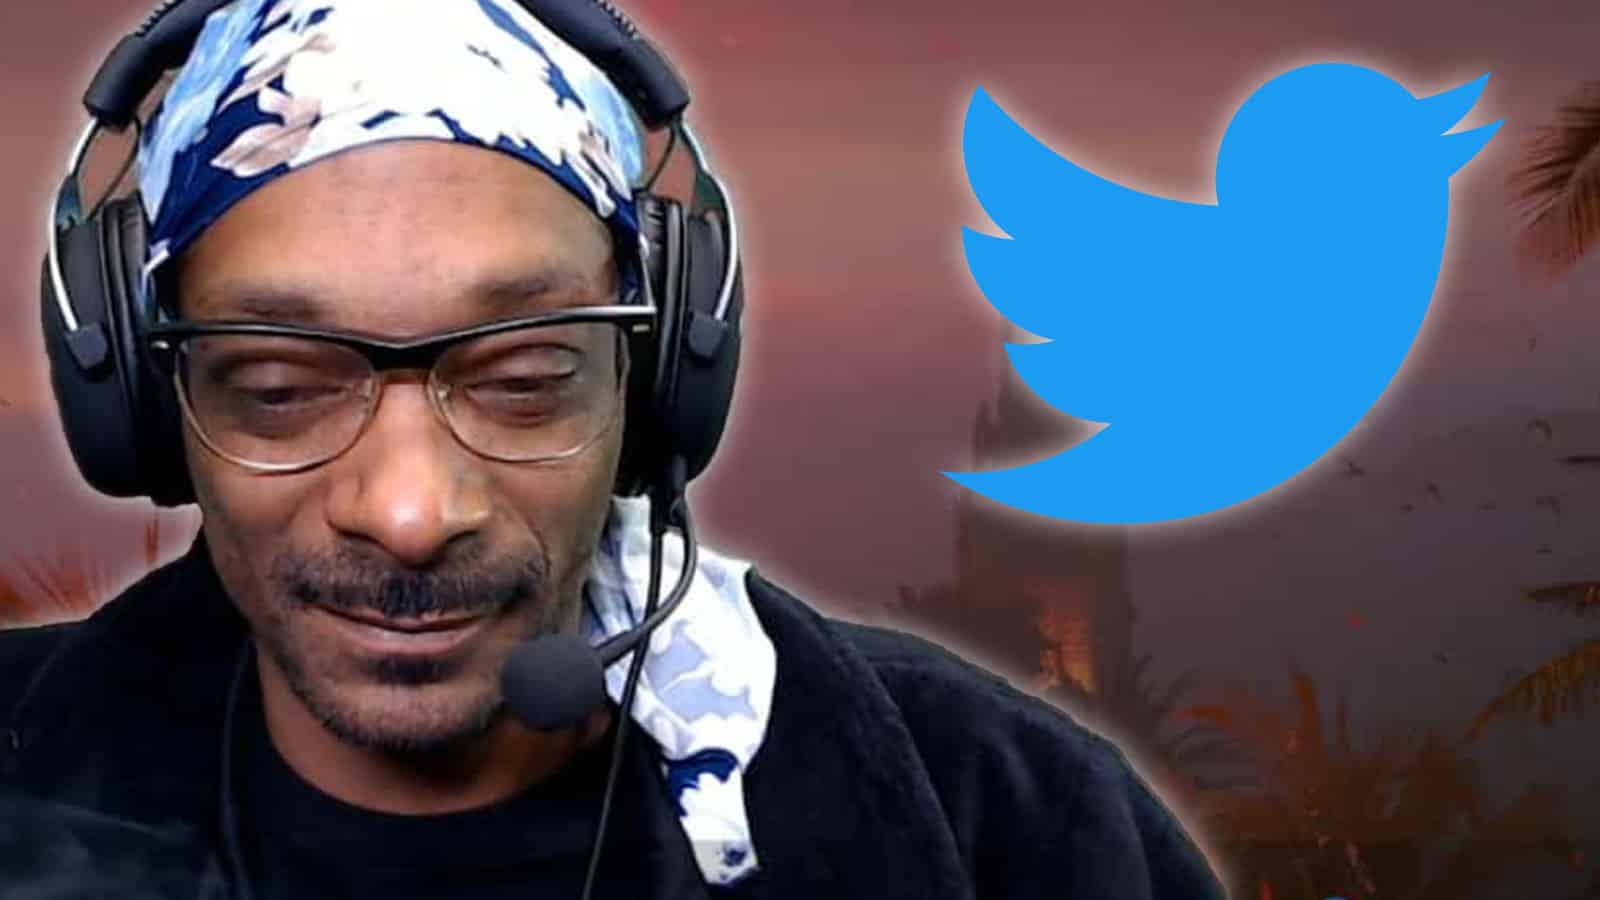 Snoop Dog wants to buy Twitter?